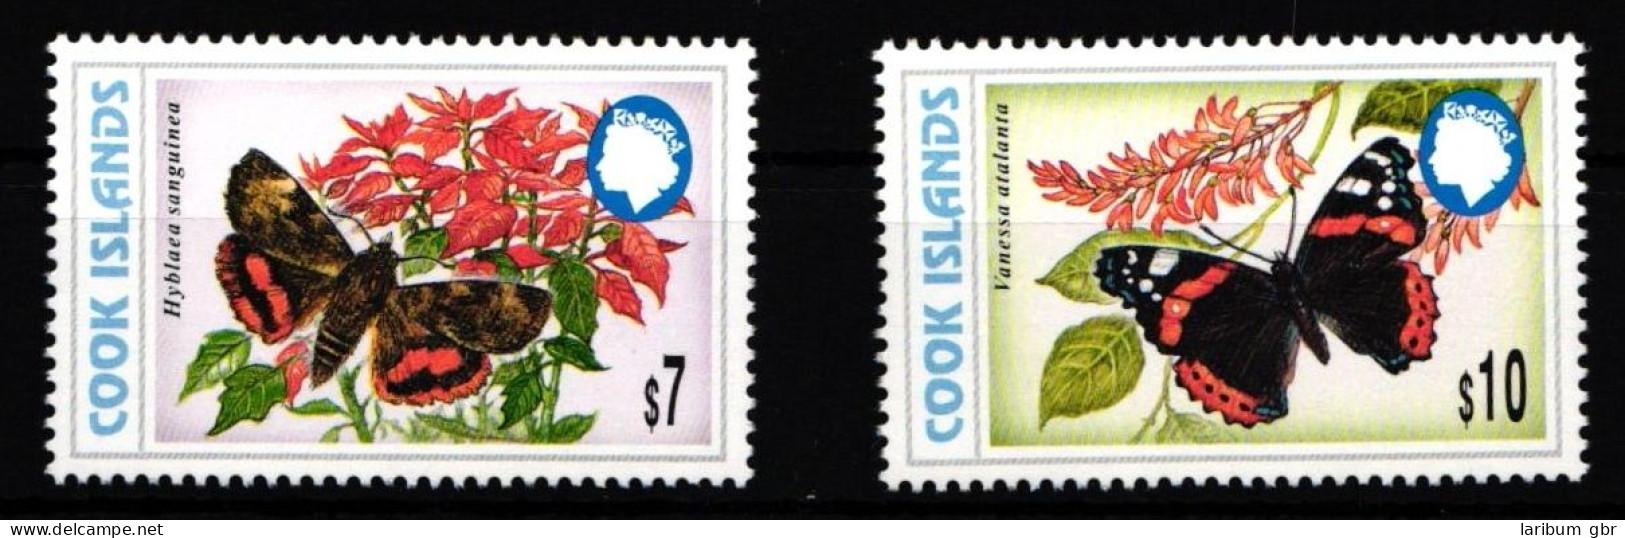 Cookinseln 1491 Und 1492 Postfrisch Schmetterling #IH012 - Cook